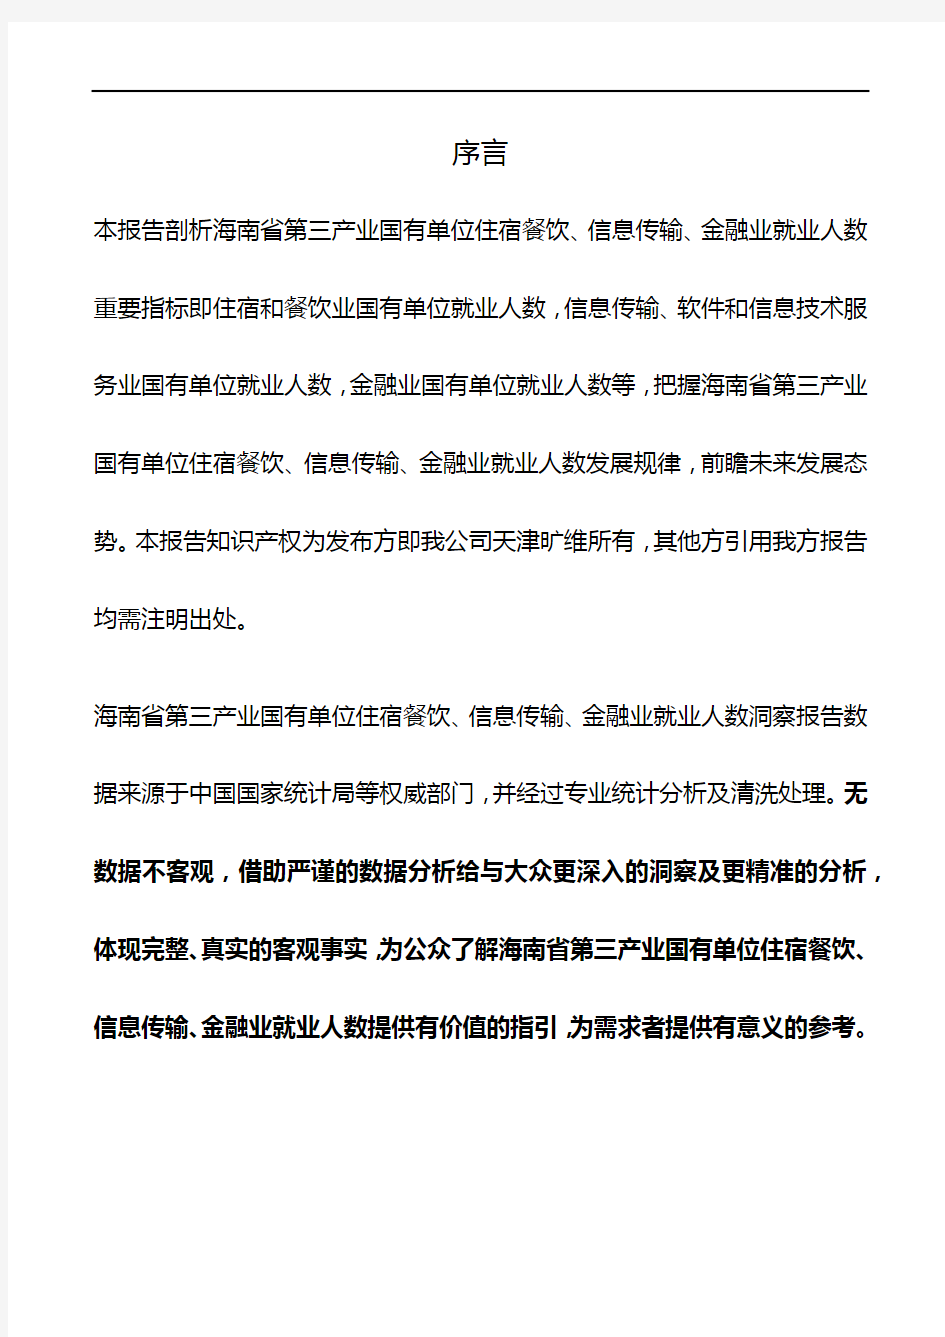 海南省第三产业国有单位住宿餐饮、信息传输、金融业就业人数3年数据洞察报告2019版